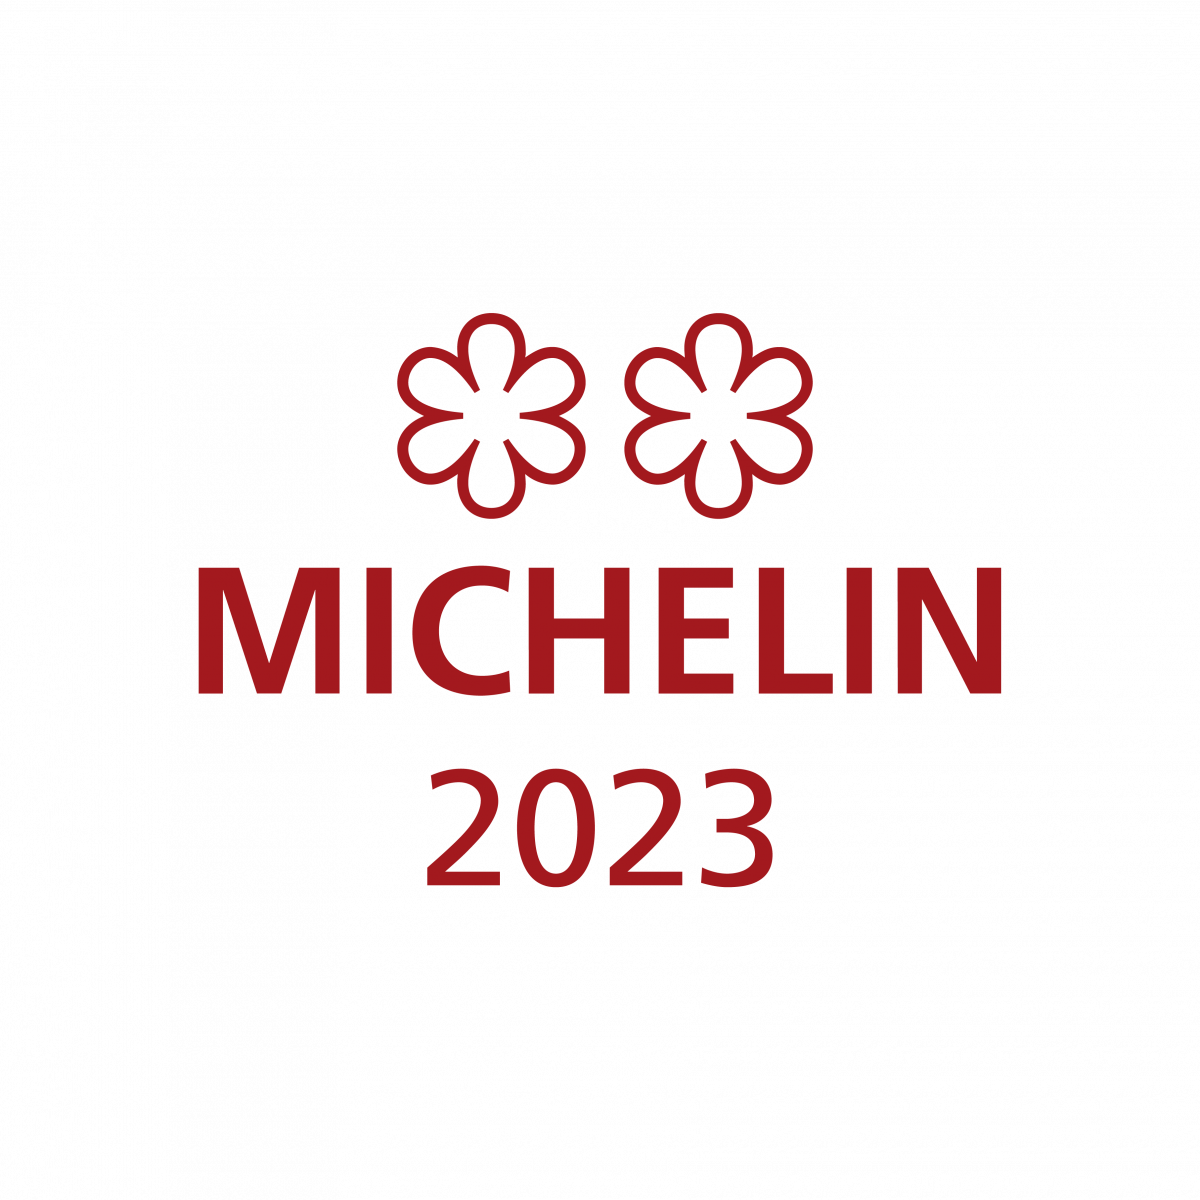 #michelinstar23